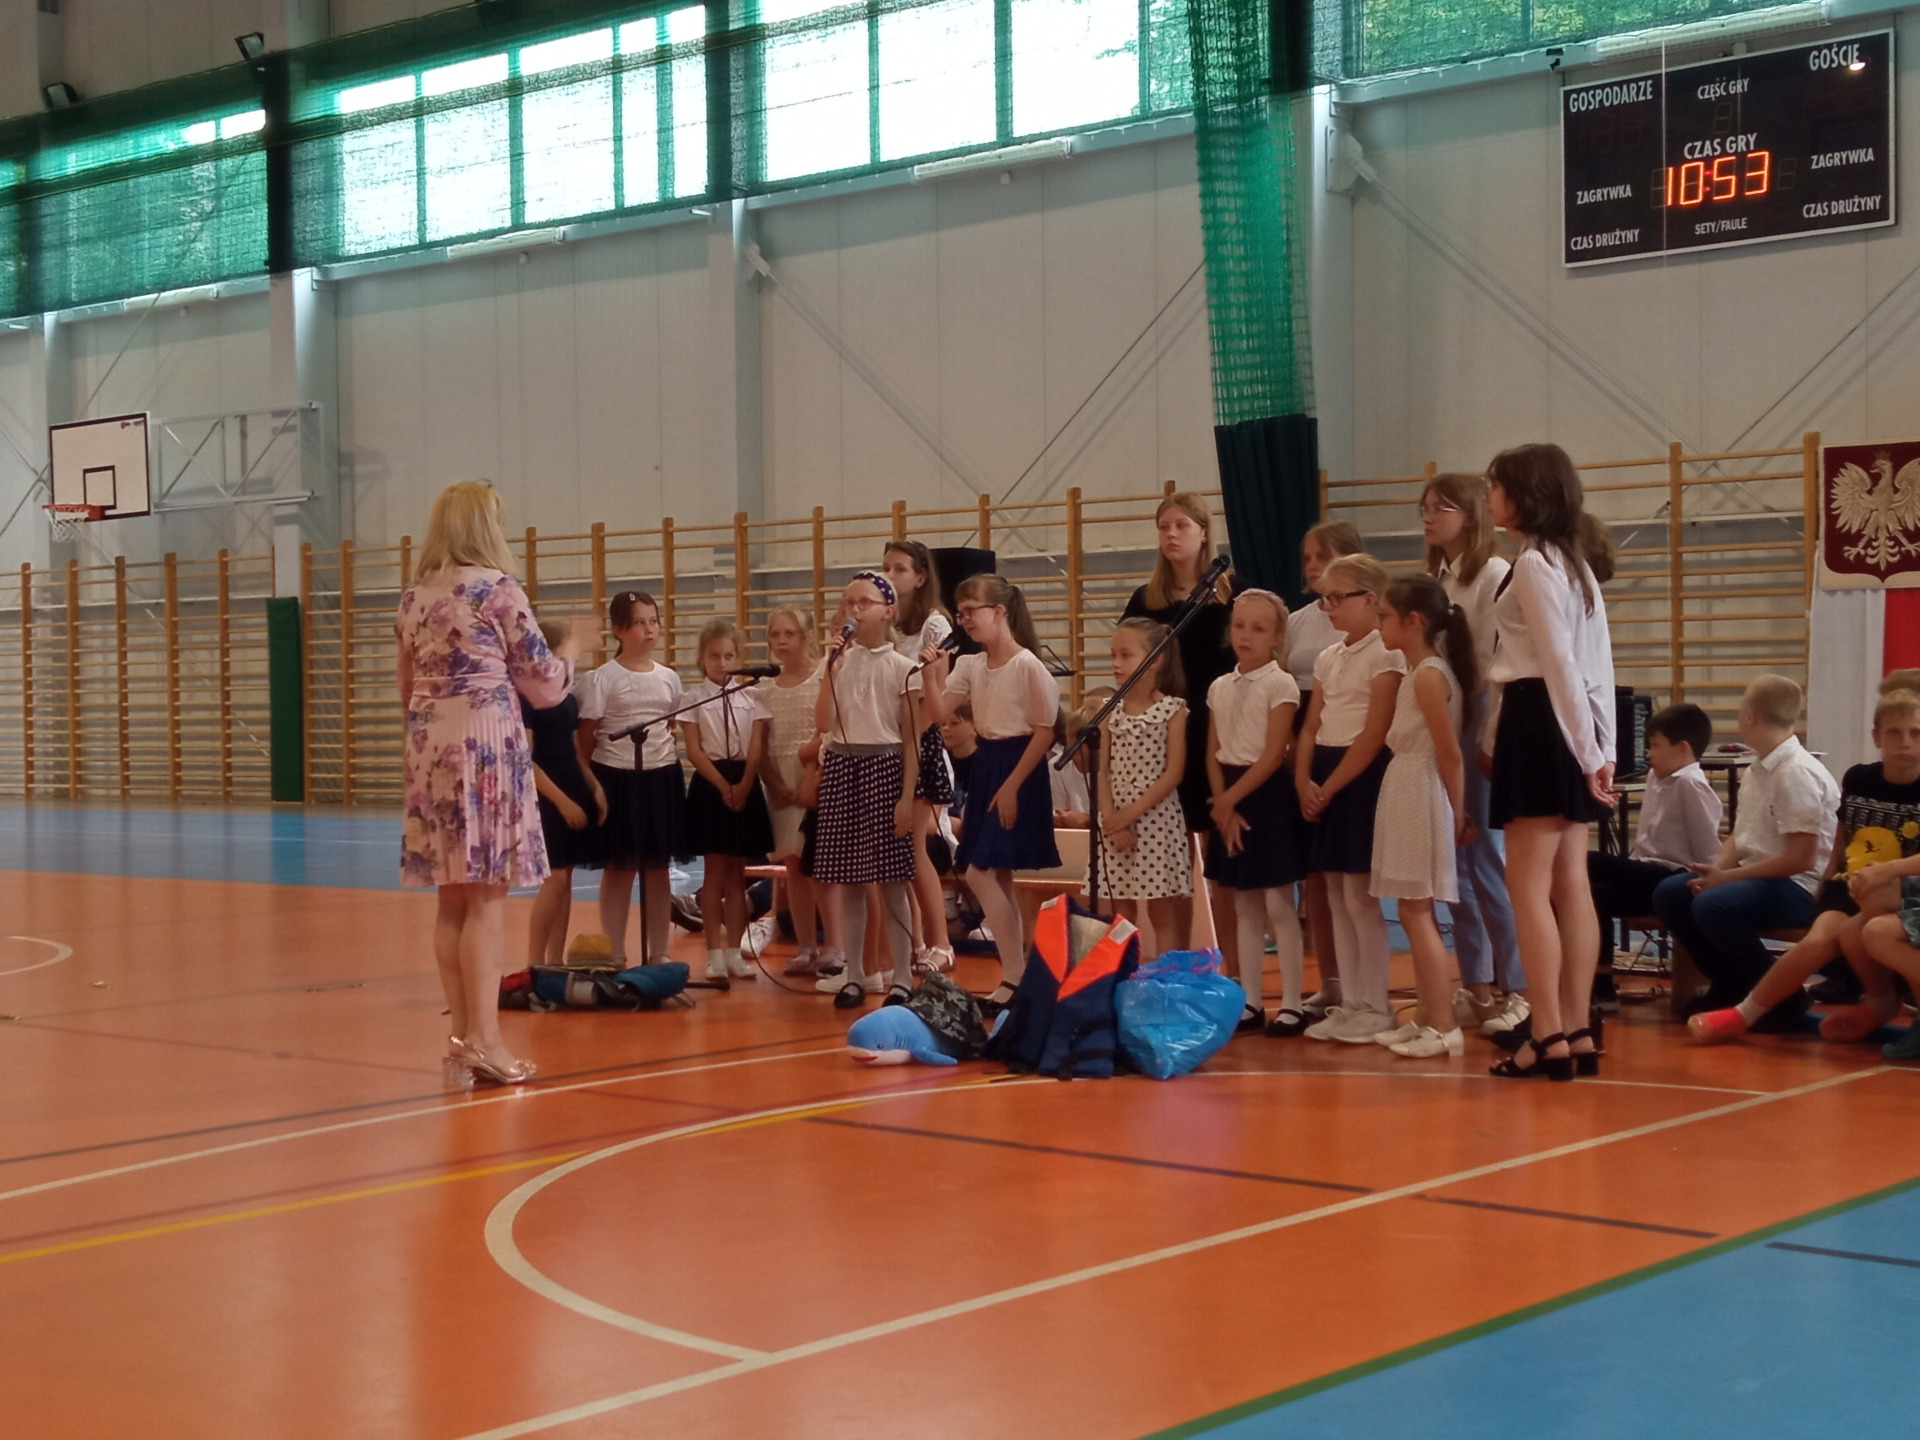 Grupa uczniów śpiewa utwory muzyczne na hali sportowej pod batutą nauczyciela muzyki.